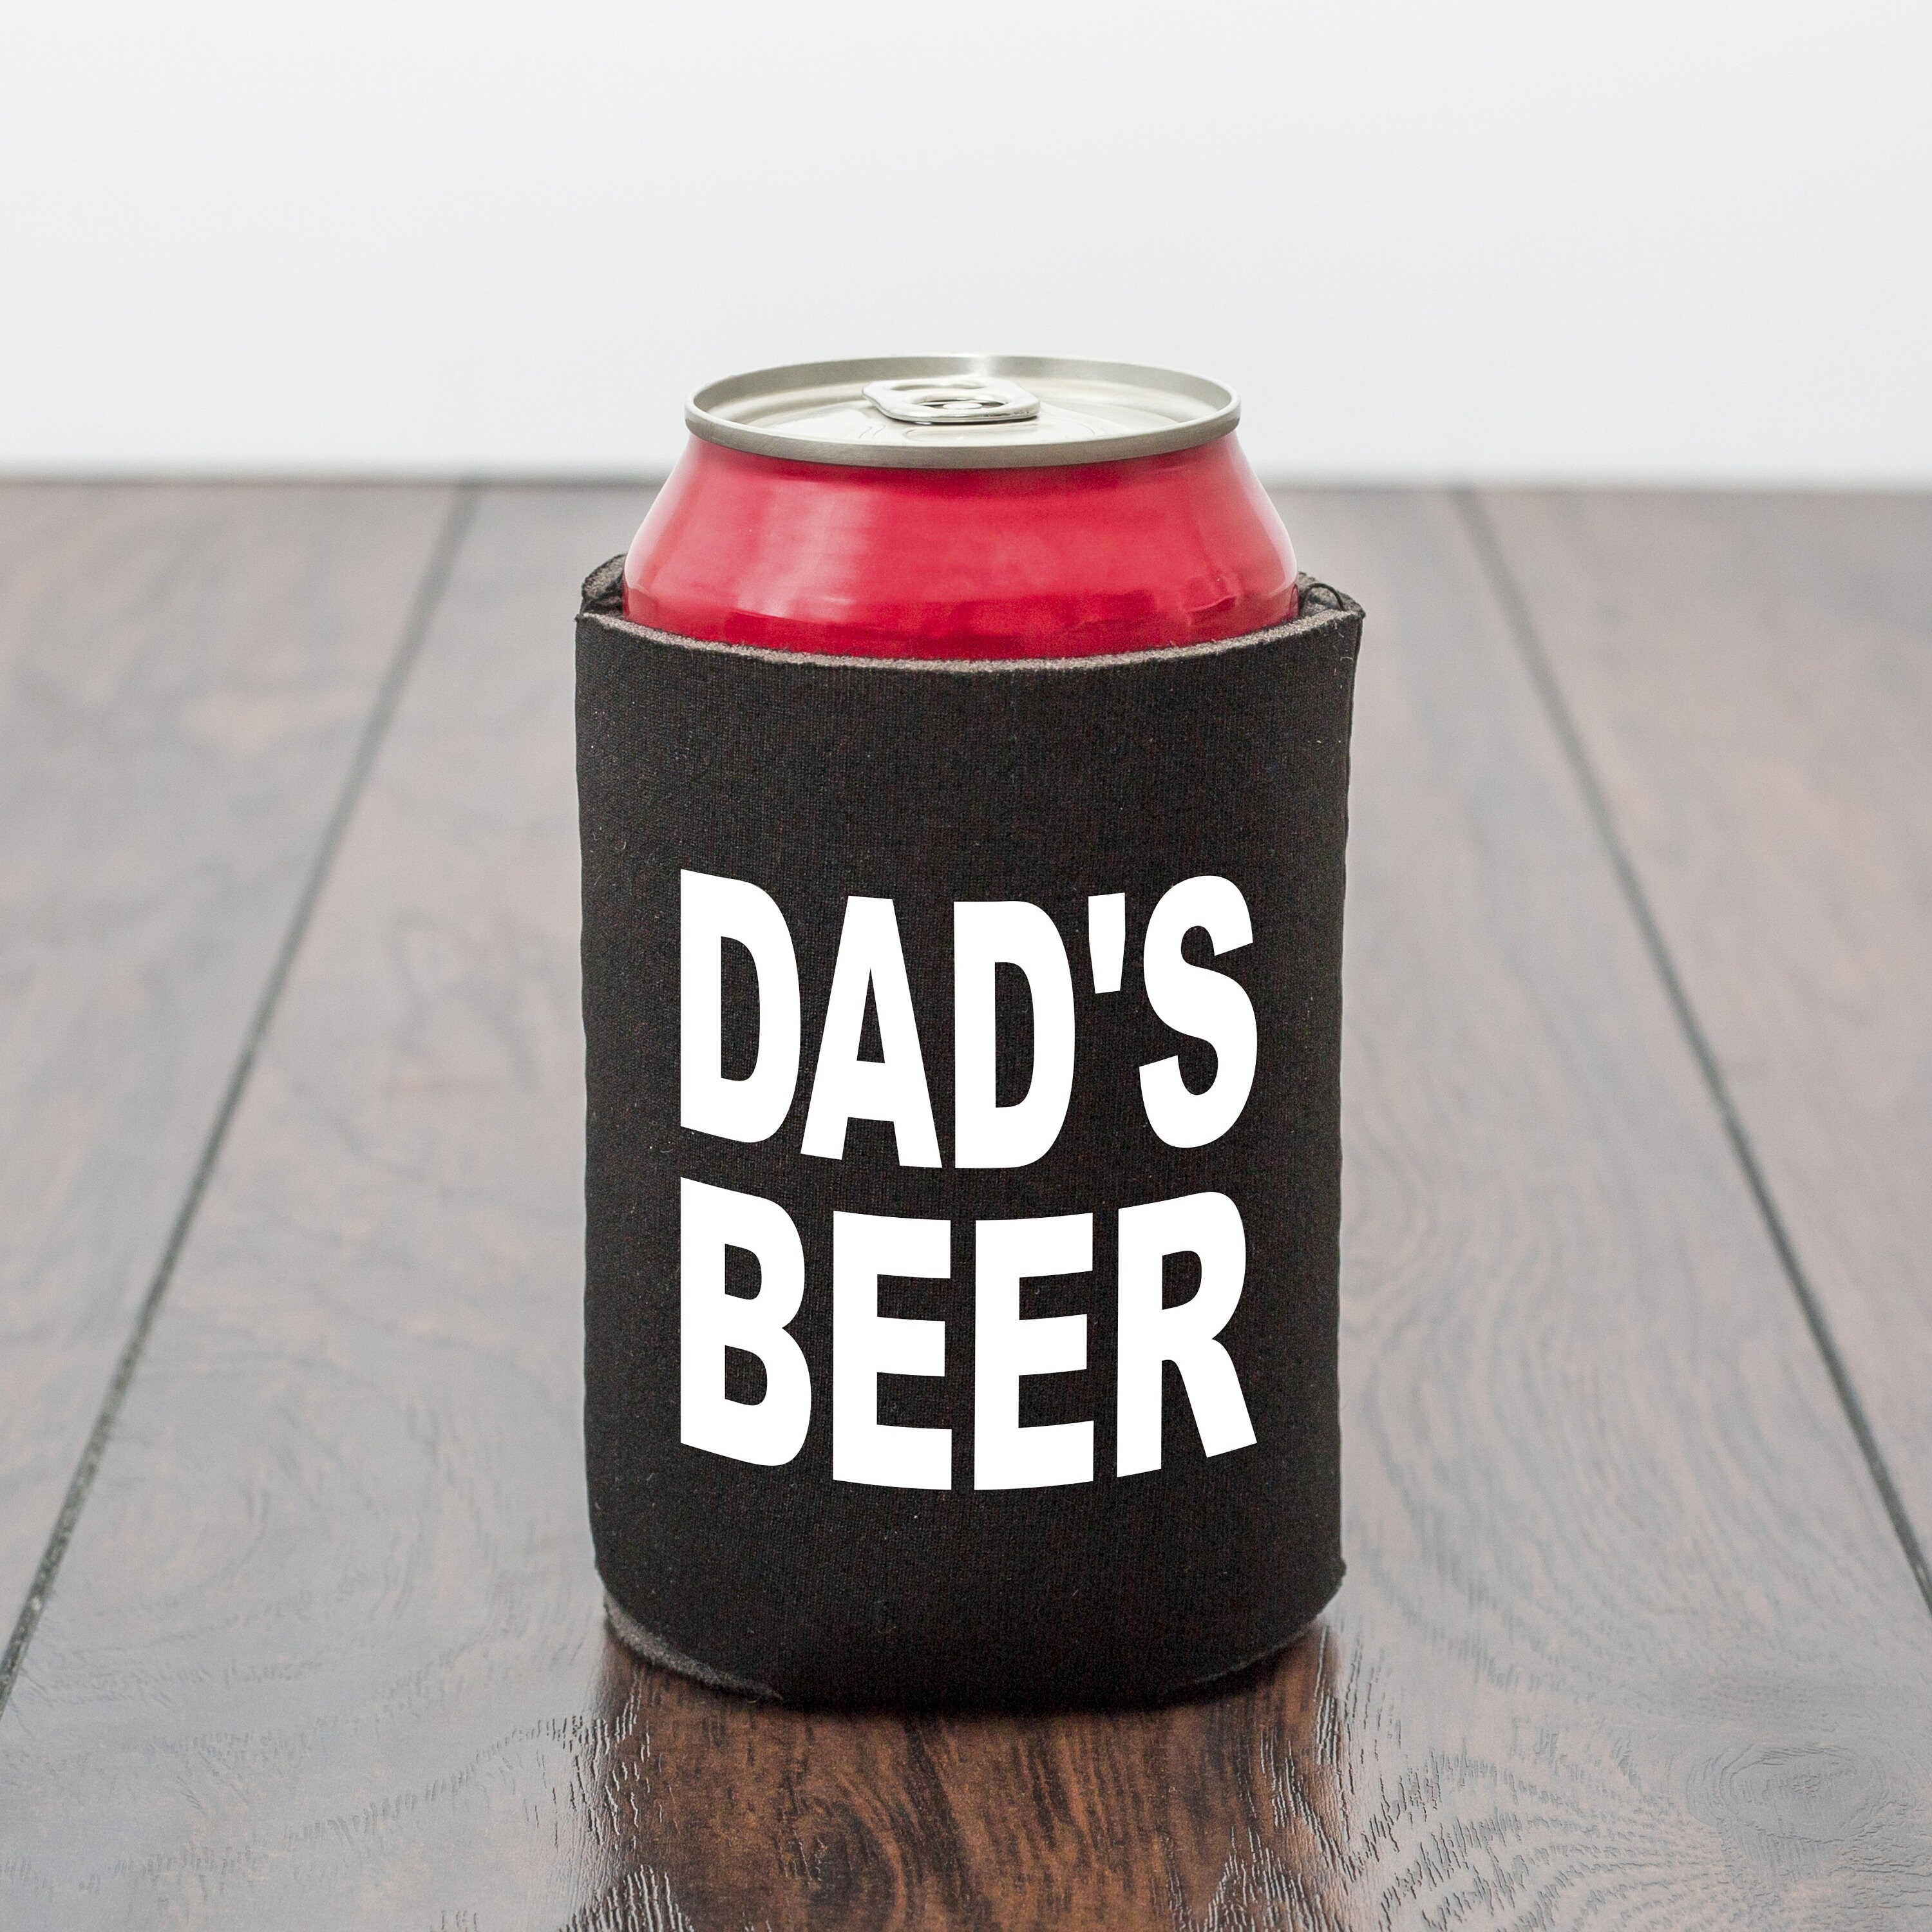 Large Size Can Cooler Holder & Dispenser, Beverage Cooler Holder, Dad Gift Beer  Can Cooler, Free Can Cooler 